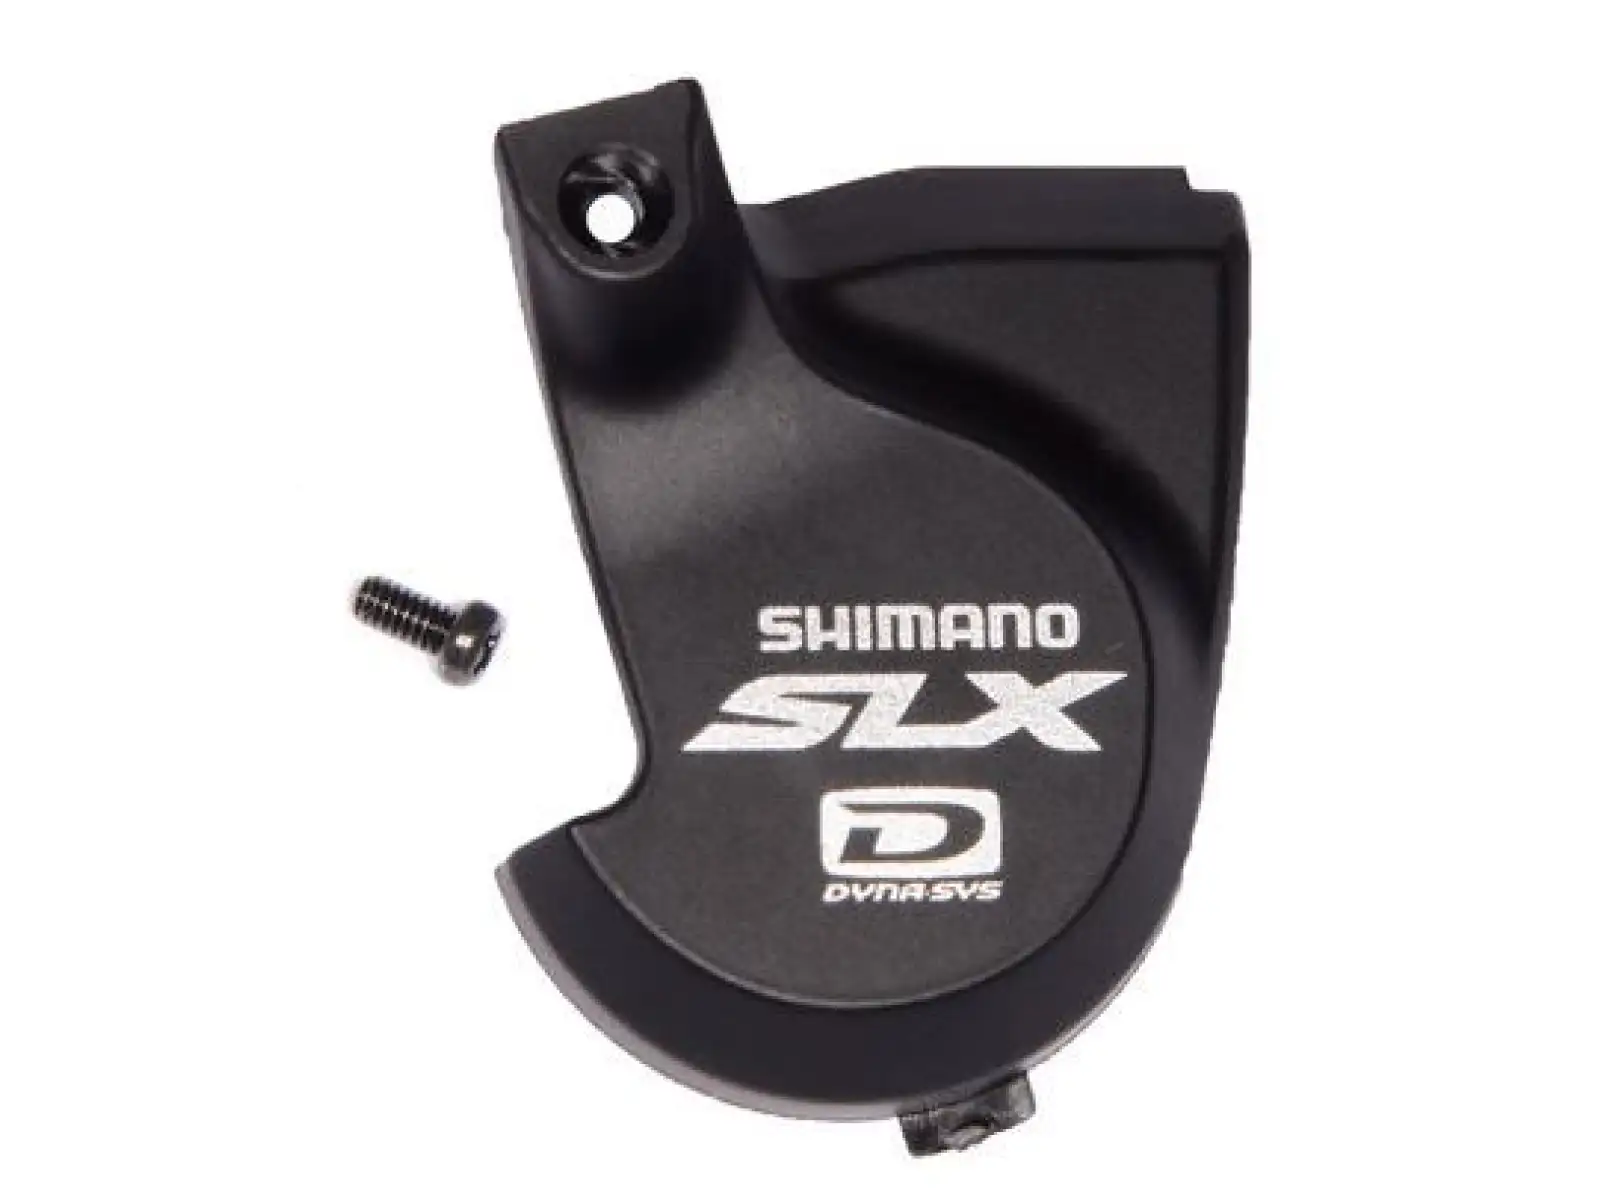 Shimano SLX SL-M670 krytka řazení bez ukazatelů pravá